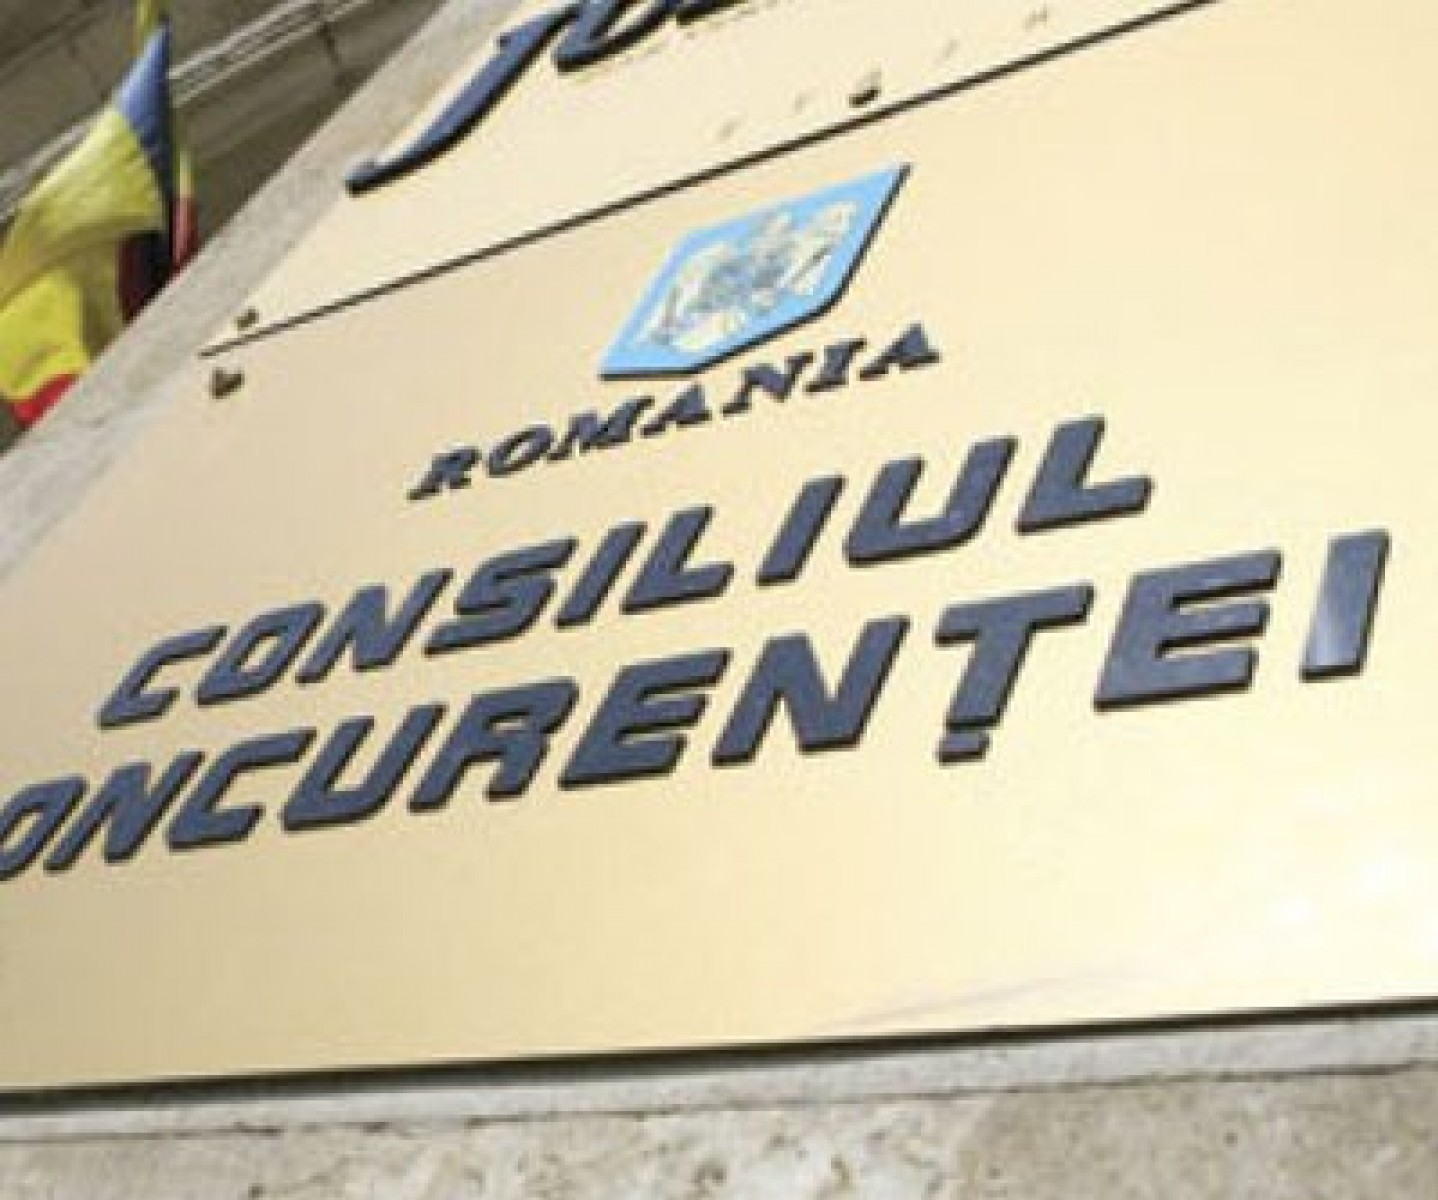 Consiliul Concurenţei a efectuat inspecţii inopinate la mai multe companii din Grupul Enel, suspectând posibile abuzuri de poziţie dominantă